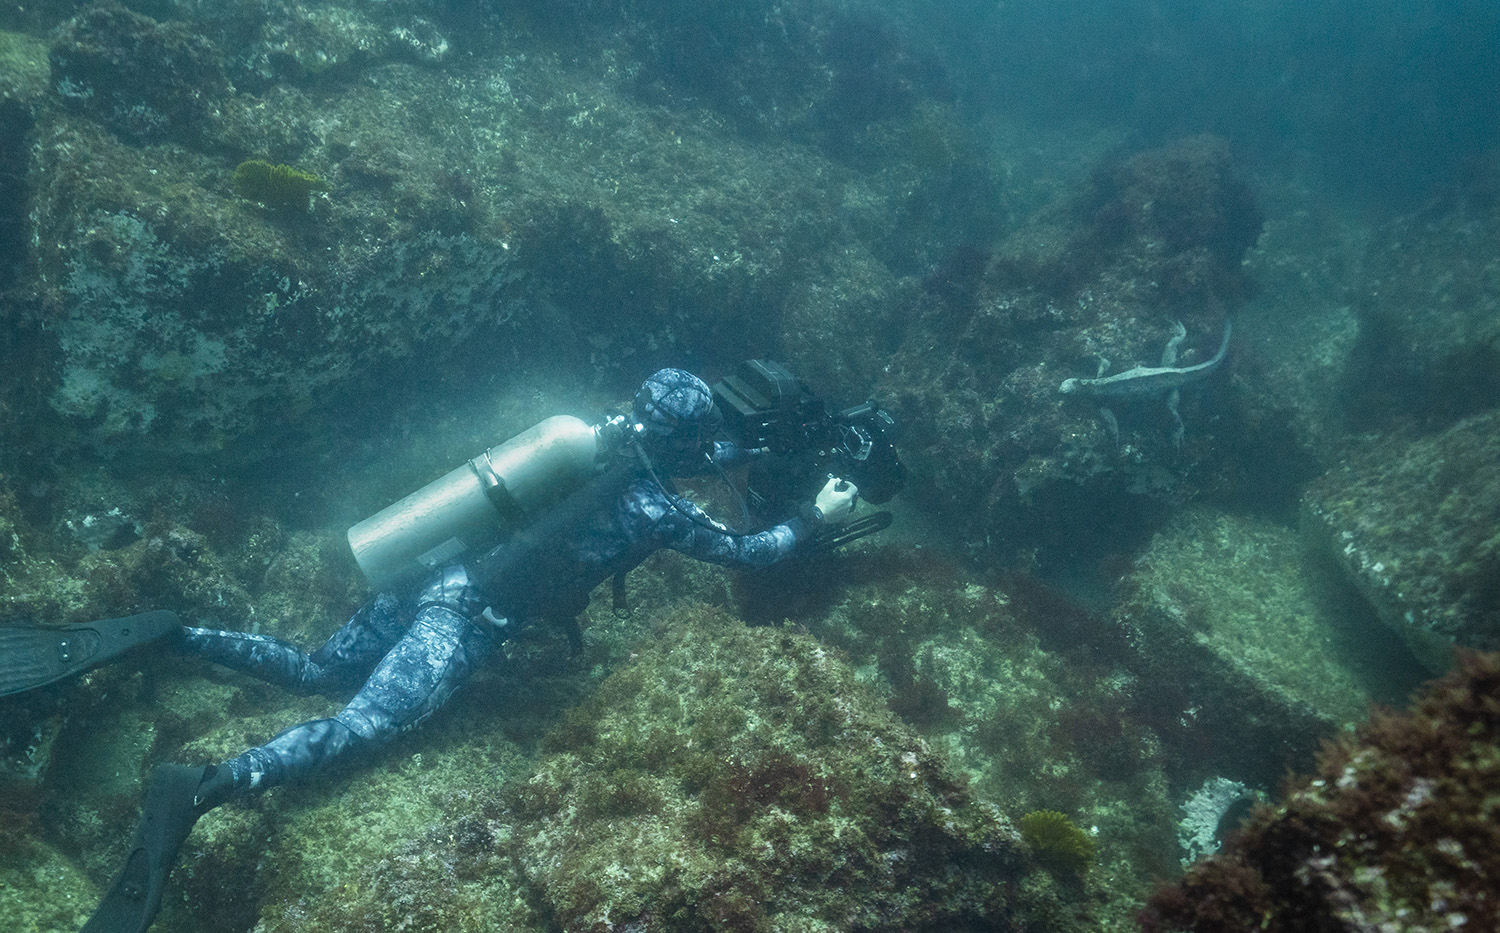 Bertie Gregory filming Marine Iguana underwater.